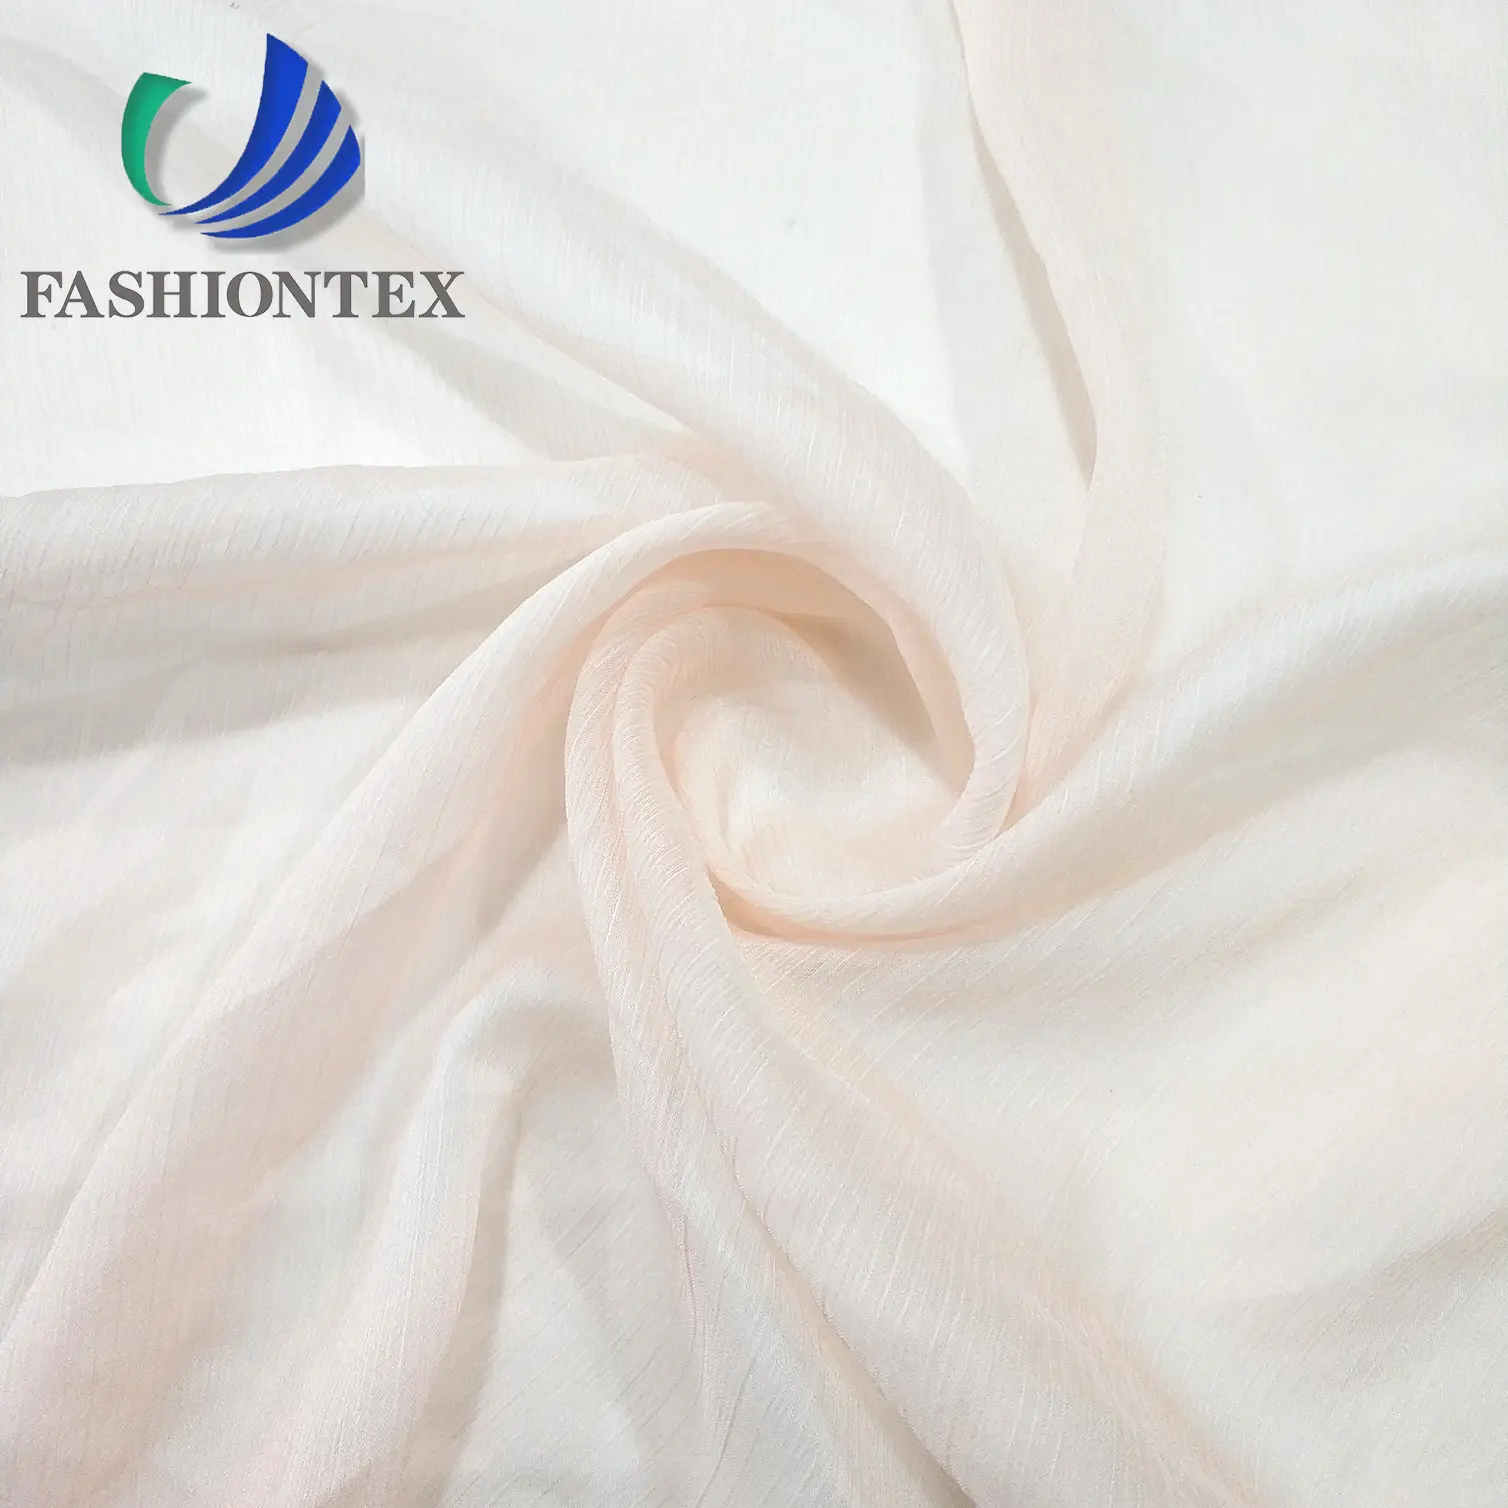 Fashiontex 30D Yoryu fabric 100%polyester crepe chiffon fabric